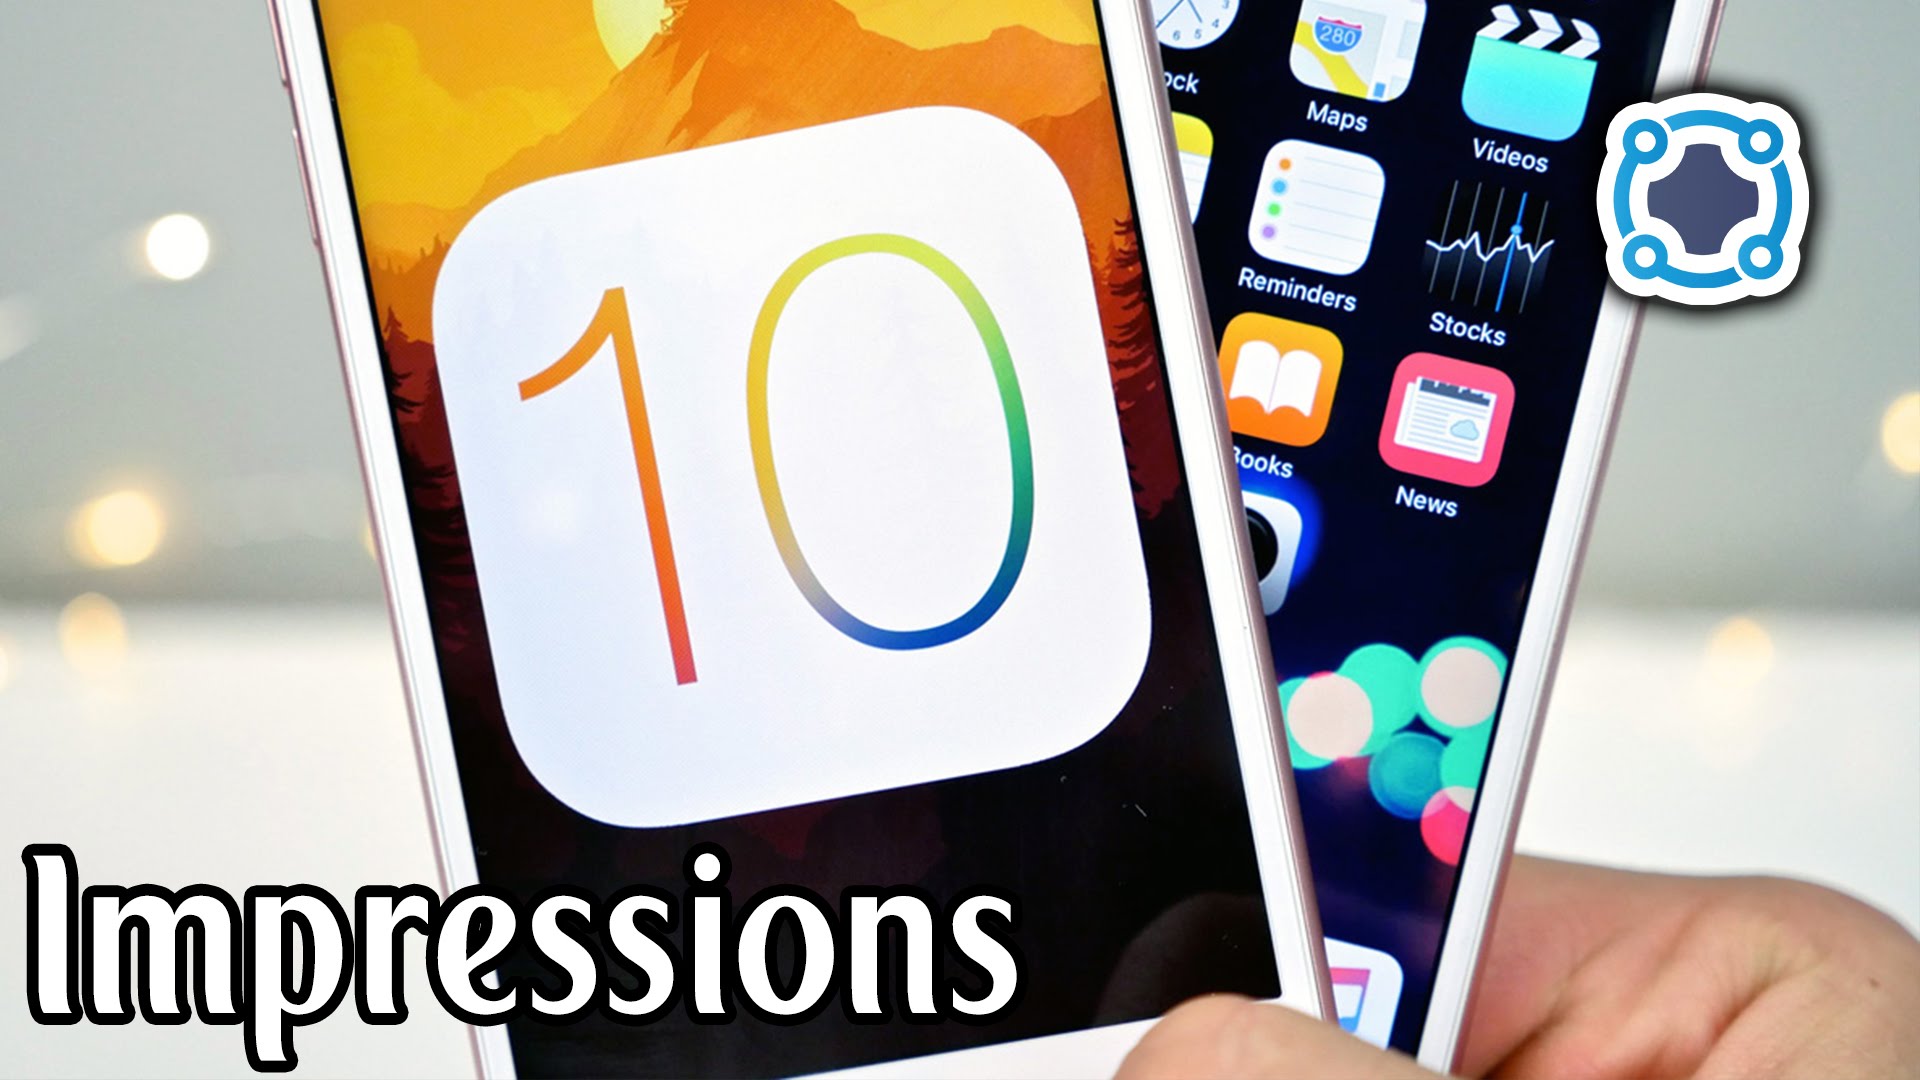 Impressions - iOS 10 Public Beta